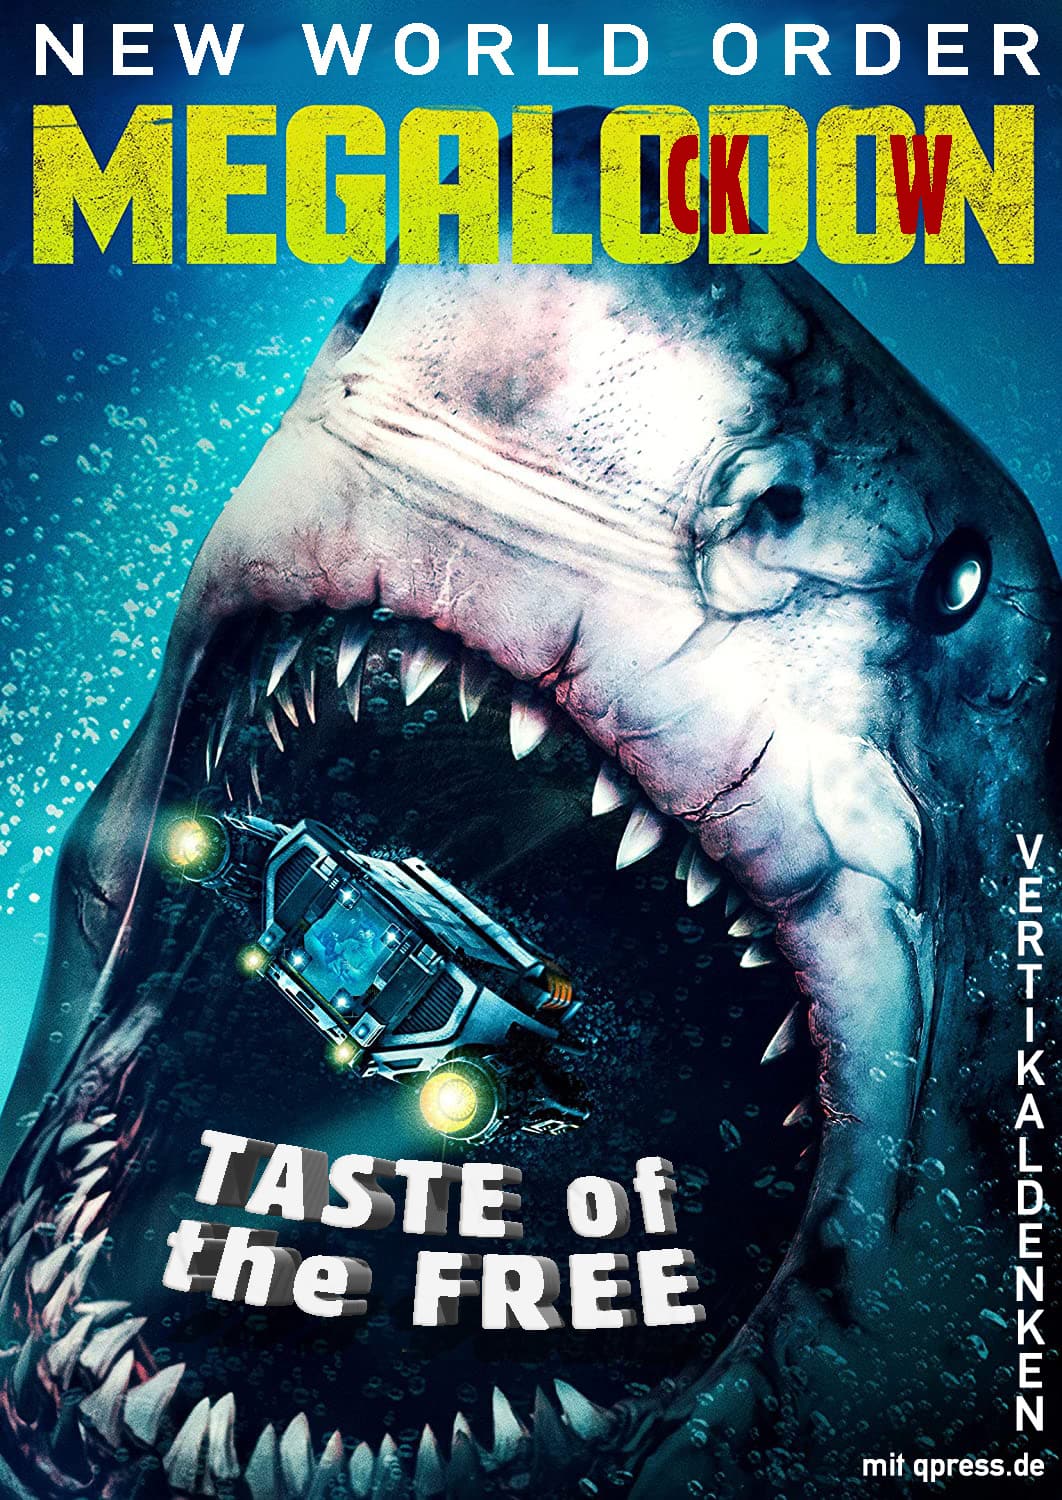 Megalodon Megalockdown bite the free